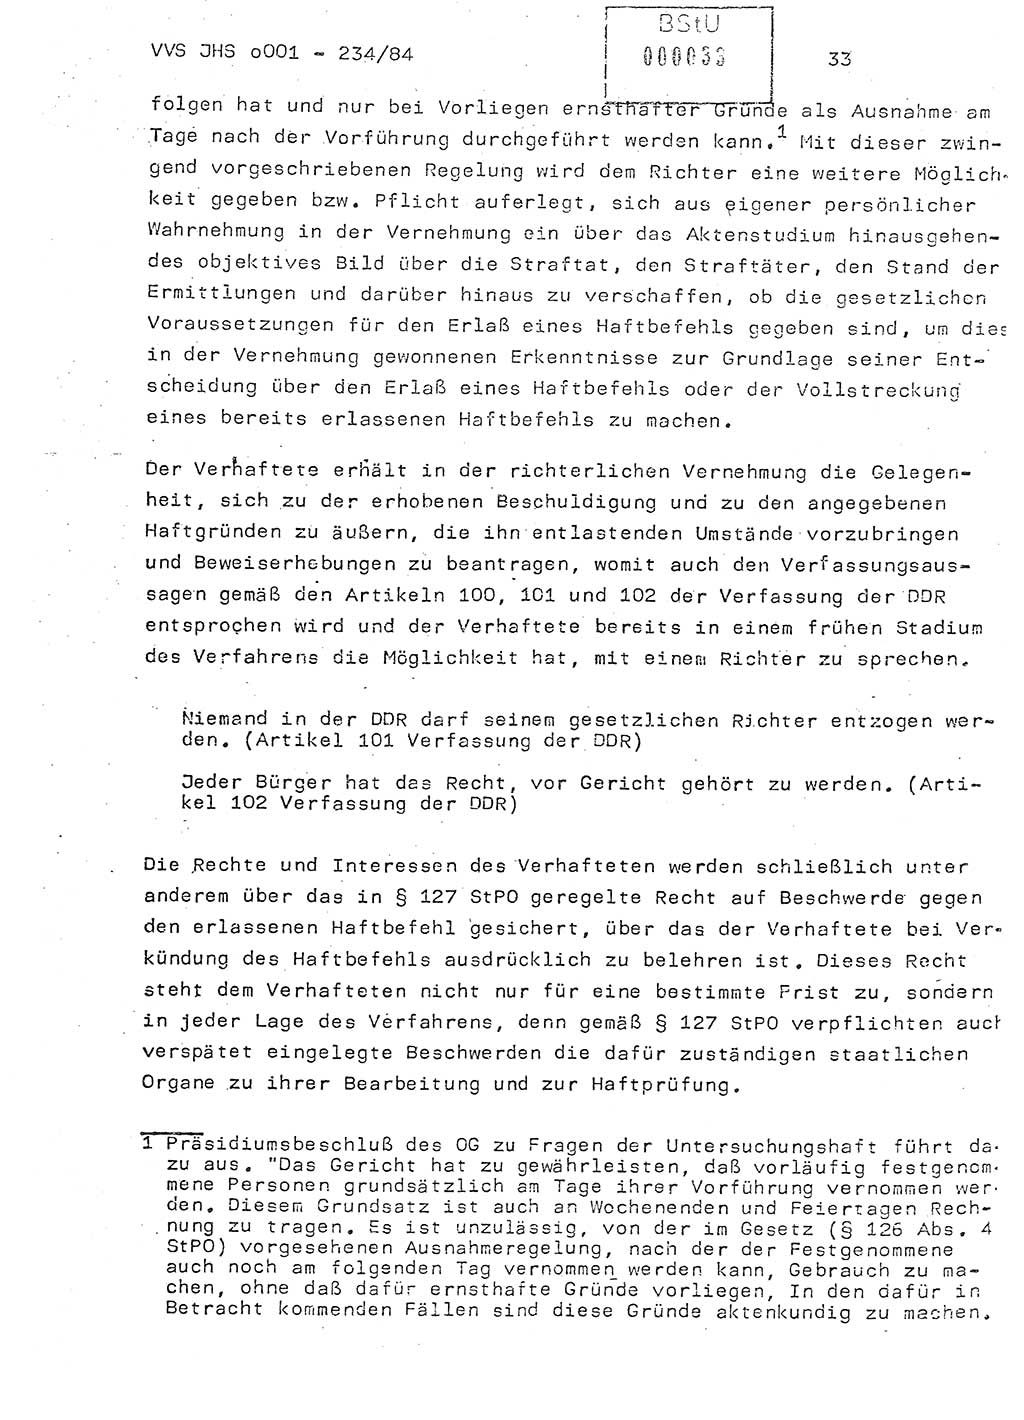 Dissertation Oberst Siegfried Rataizick (Abt. ⅩⅣ), Oberstleutnant Volkmar Heinz (Abt. ⅩⅣ), Oberstleutnant Werner Stein (HA Ⅸ), Hauptmann Heinz Conrad (JHS), Ministerium für Staatssicherheit (MfS) [Deutsche Demokratische Republik (DDR)], Juristische Hochschule (JHS), Vertrauliche Verschlußsache (VVS) o001-234/84, Potsdam 1984, Seite 33 (Diss. MfS DDR JHS VVS o001-234/84 1984, S. 33)